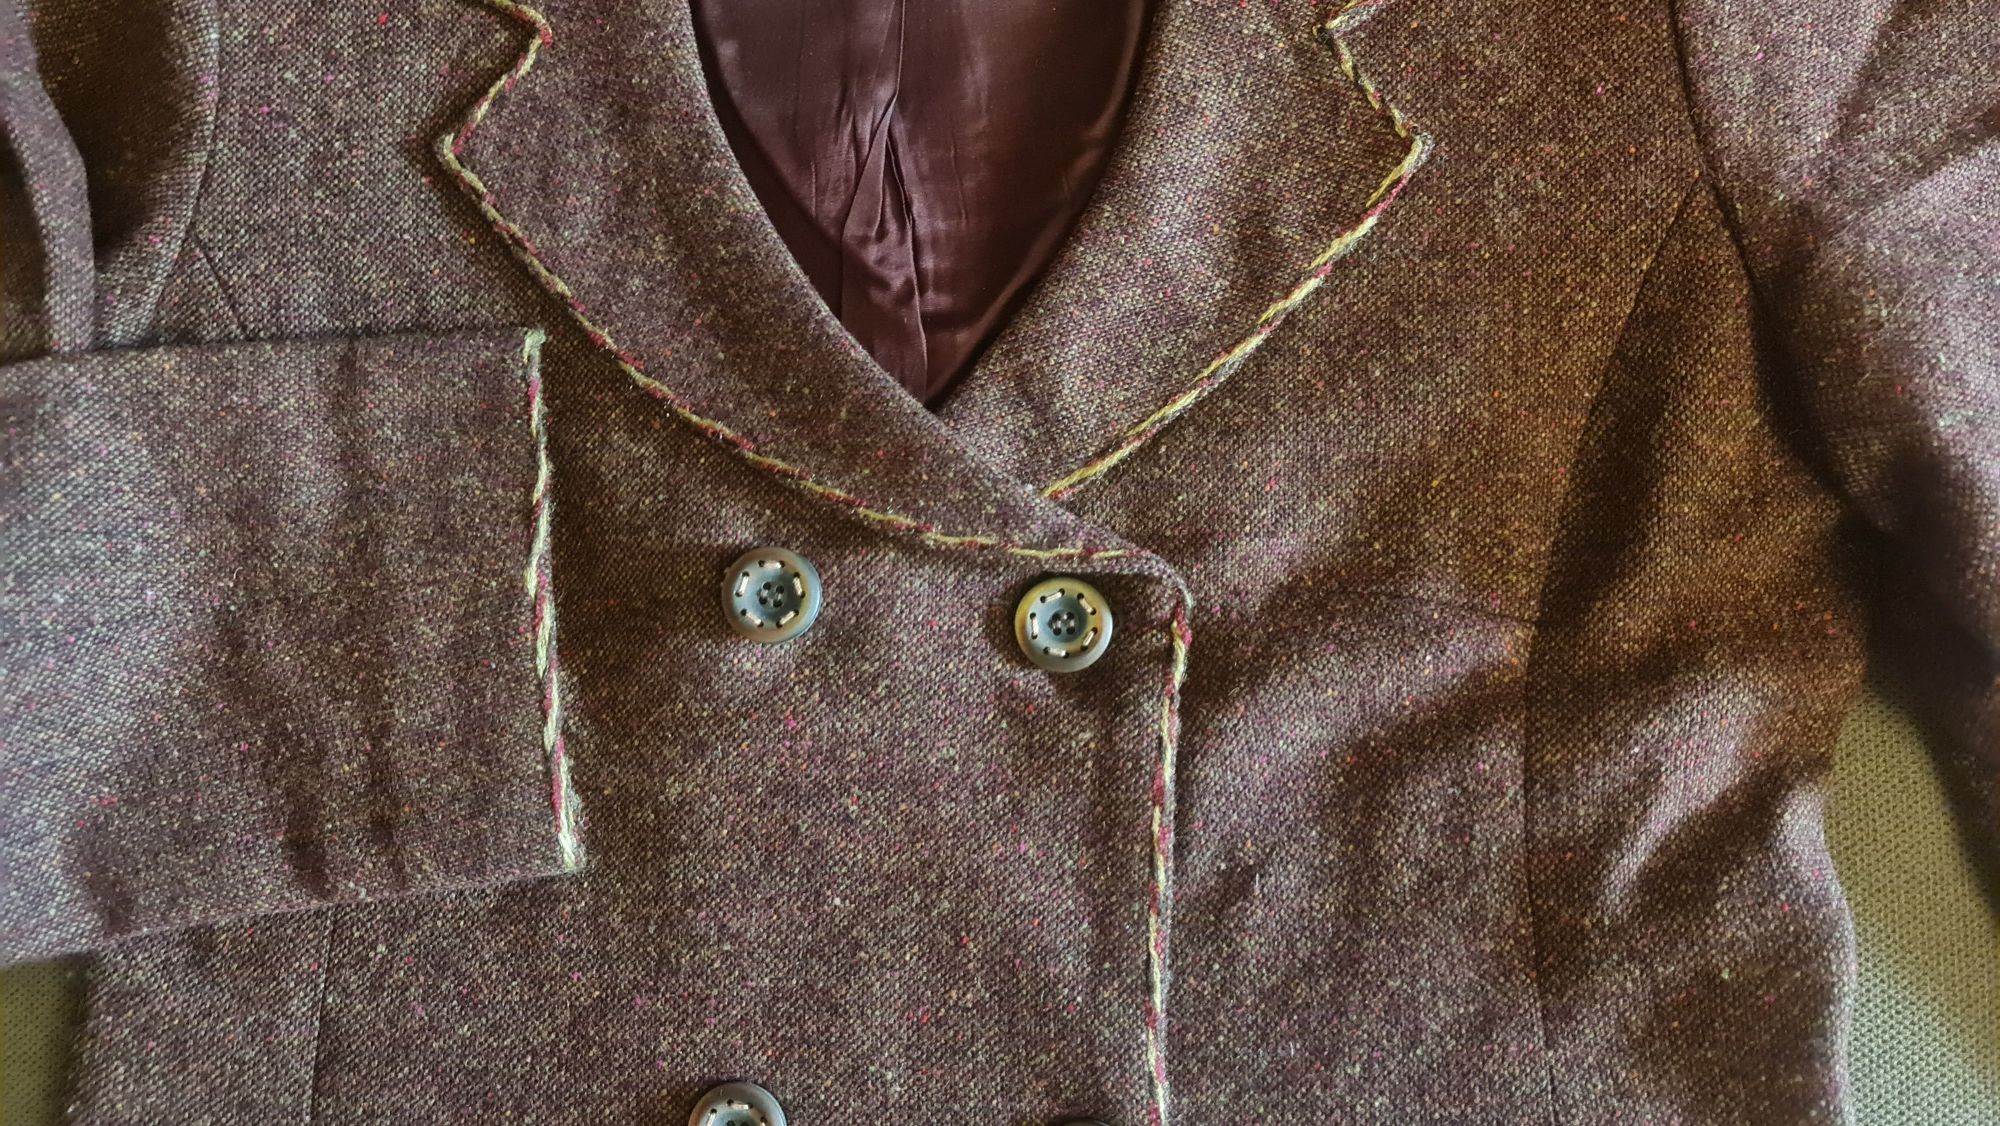 Costum fusta și taior, din lana, marime 38/M, culoare maro